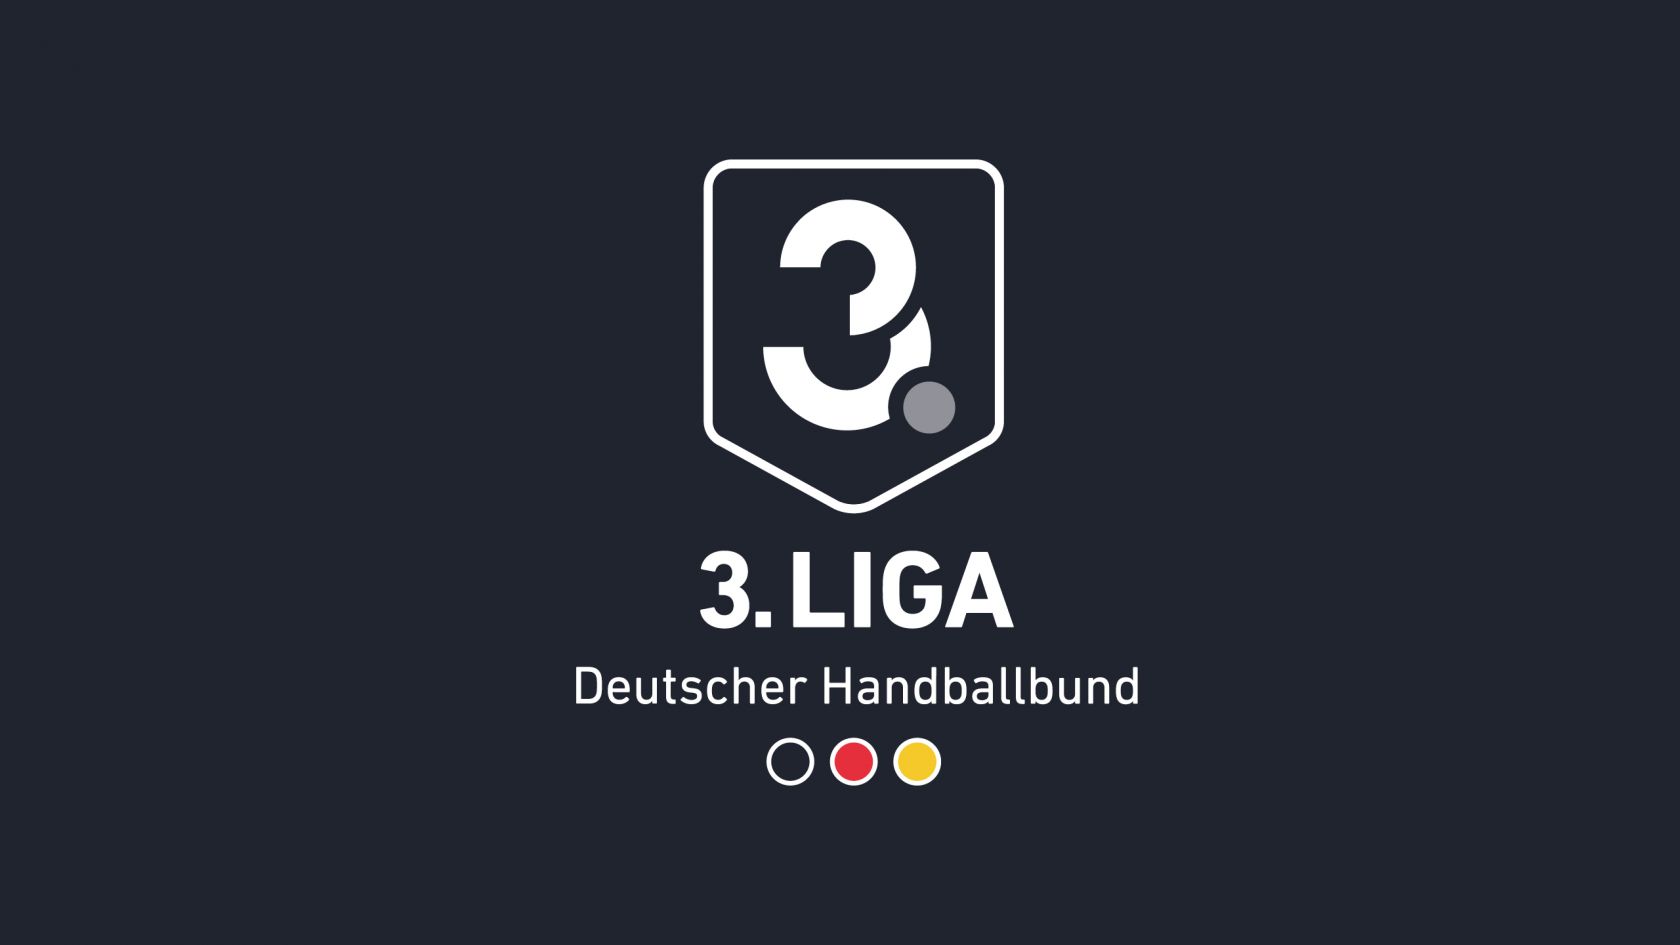 Informationen für 68 Drittligisten DHB.de